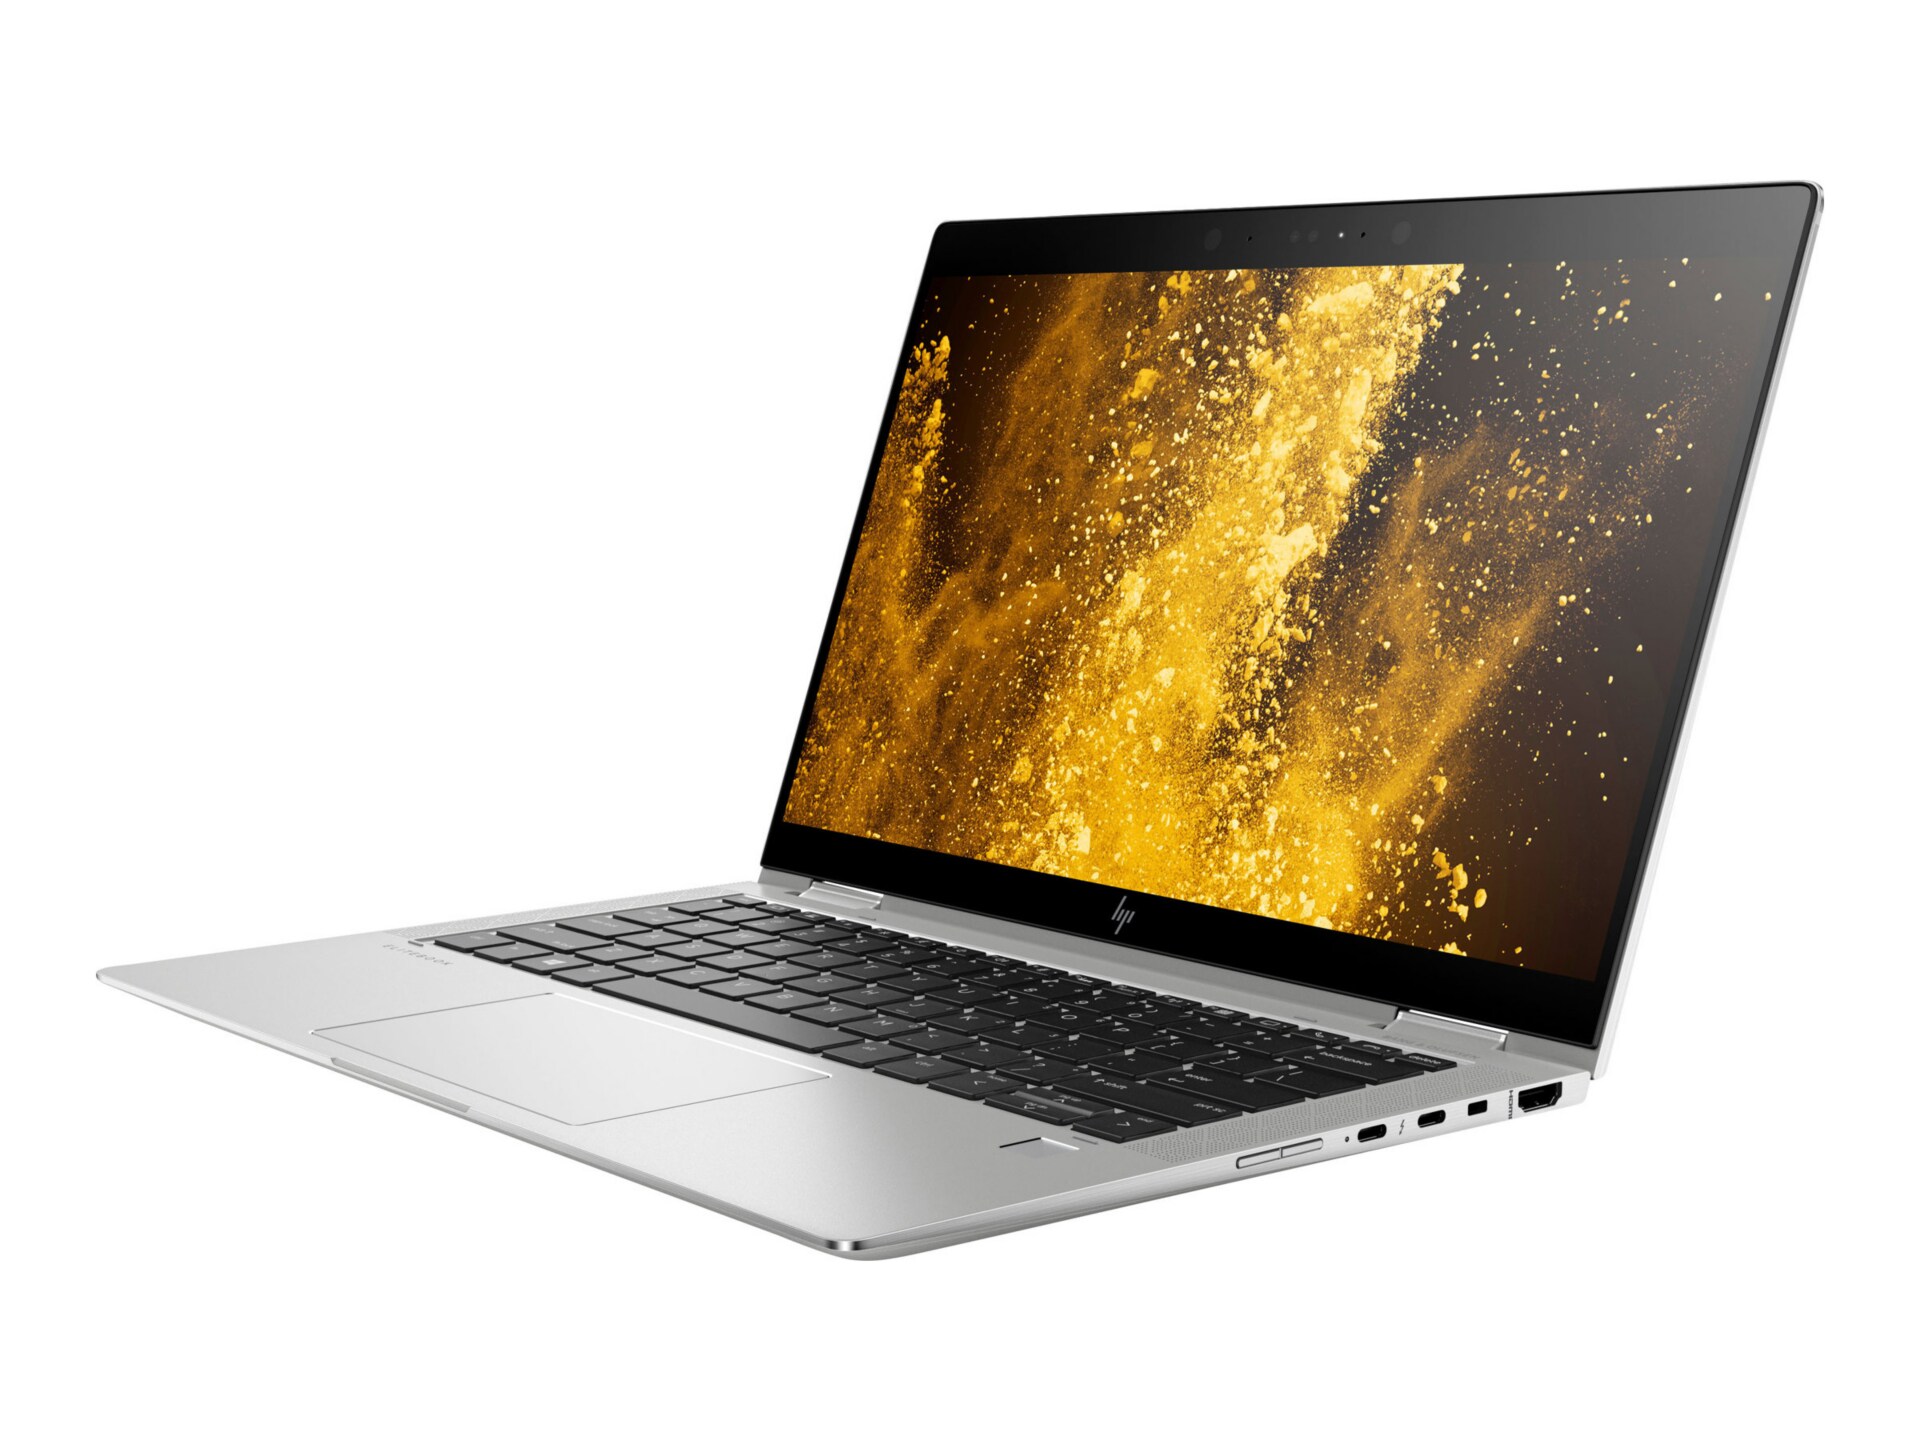 HP EliteBook x360 1030 G3 - 13.3" - Core i5 8250U - 8 GB RAM - 128 GB SSD - QWERTY US